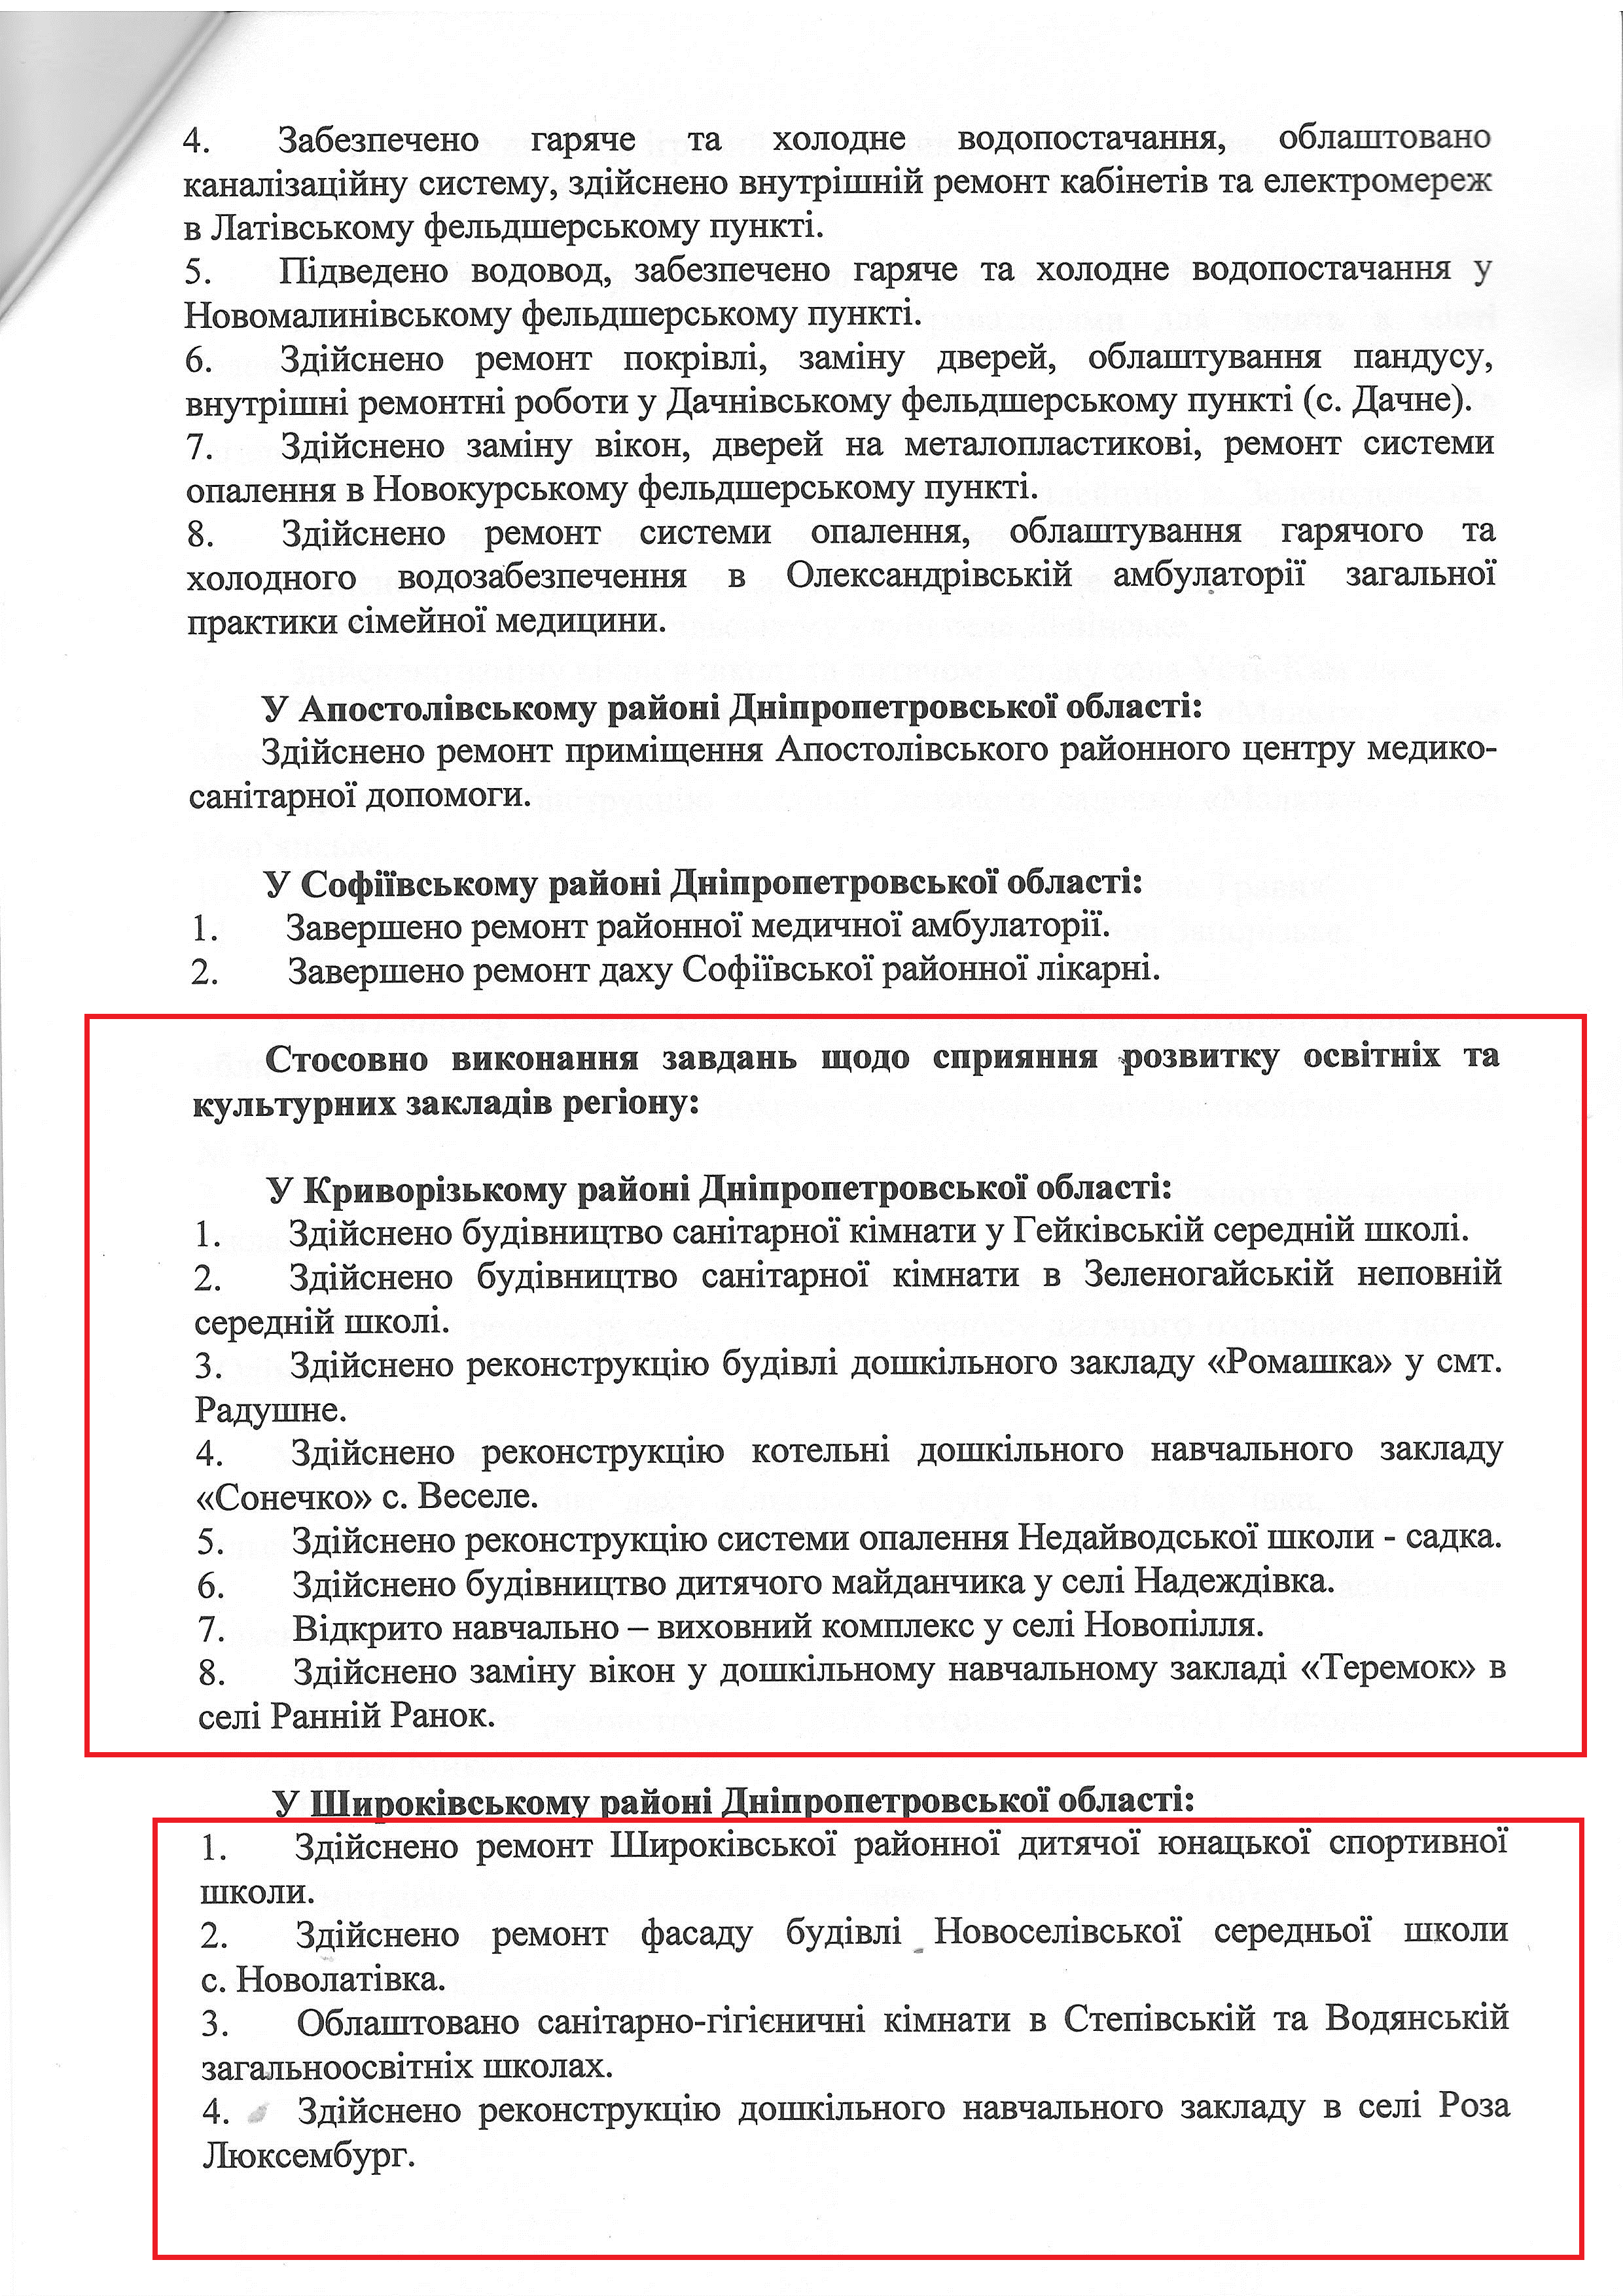 Лист народного депутата Дмитра Шпенова № 0810/01-15 від 10 серпня 2015 року